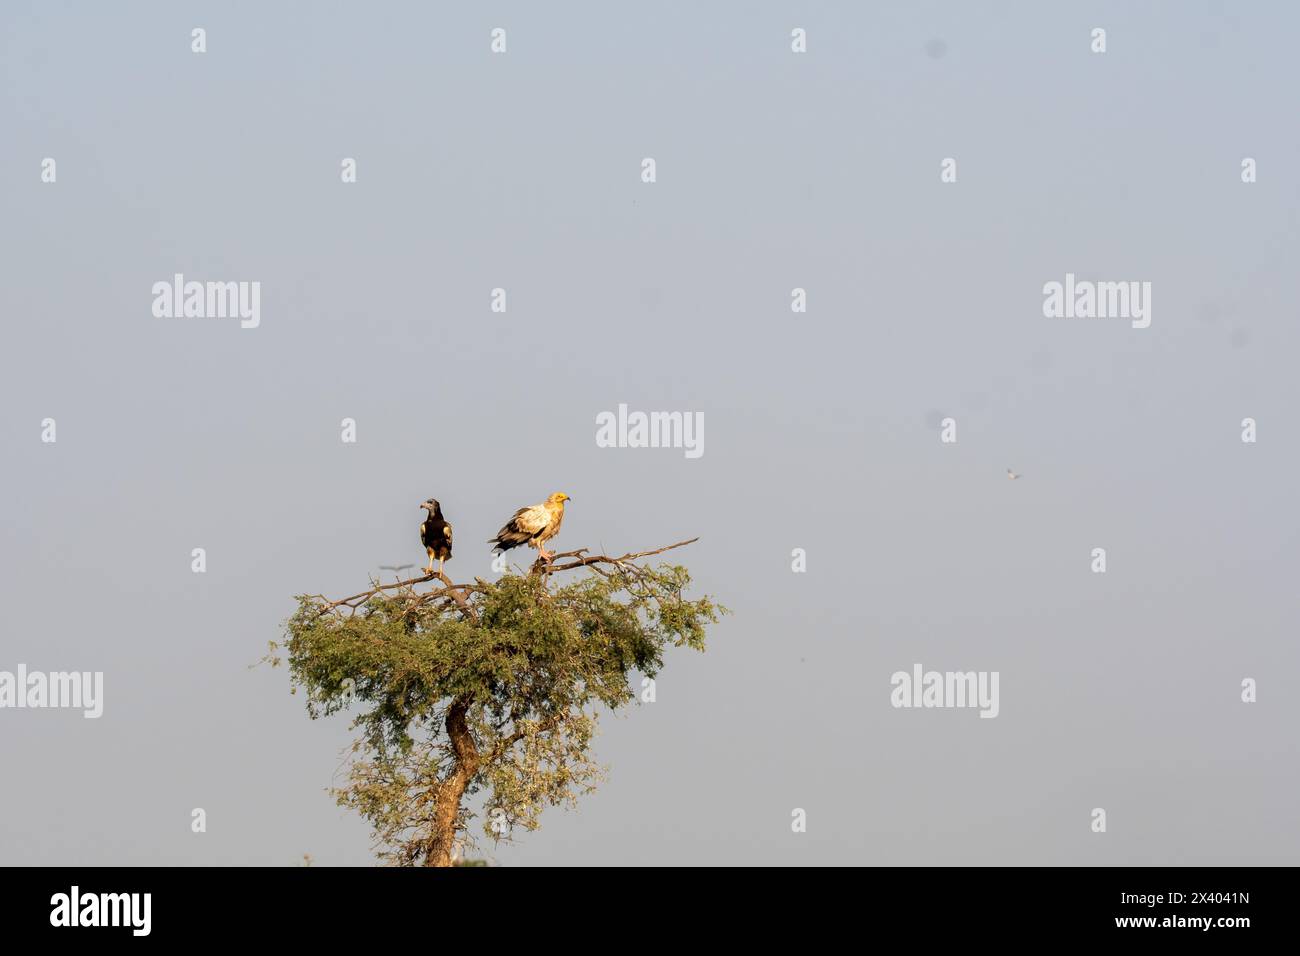 Des vautours égyptiens perchés sur un arbre à l'intérieur de la réserve de conservation de Jorbeer à la périphérie de Bikaner, Rajasthan, lors d'un safari animalier Banque D'Images